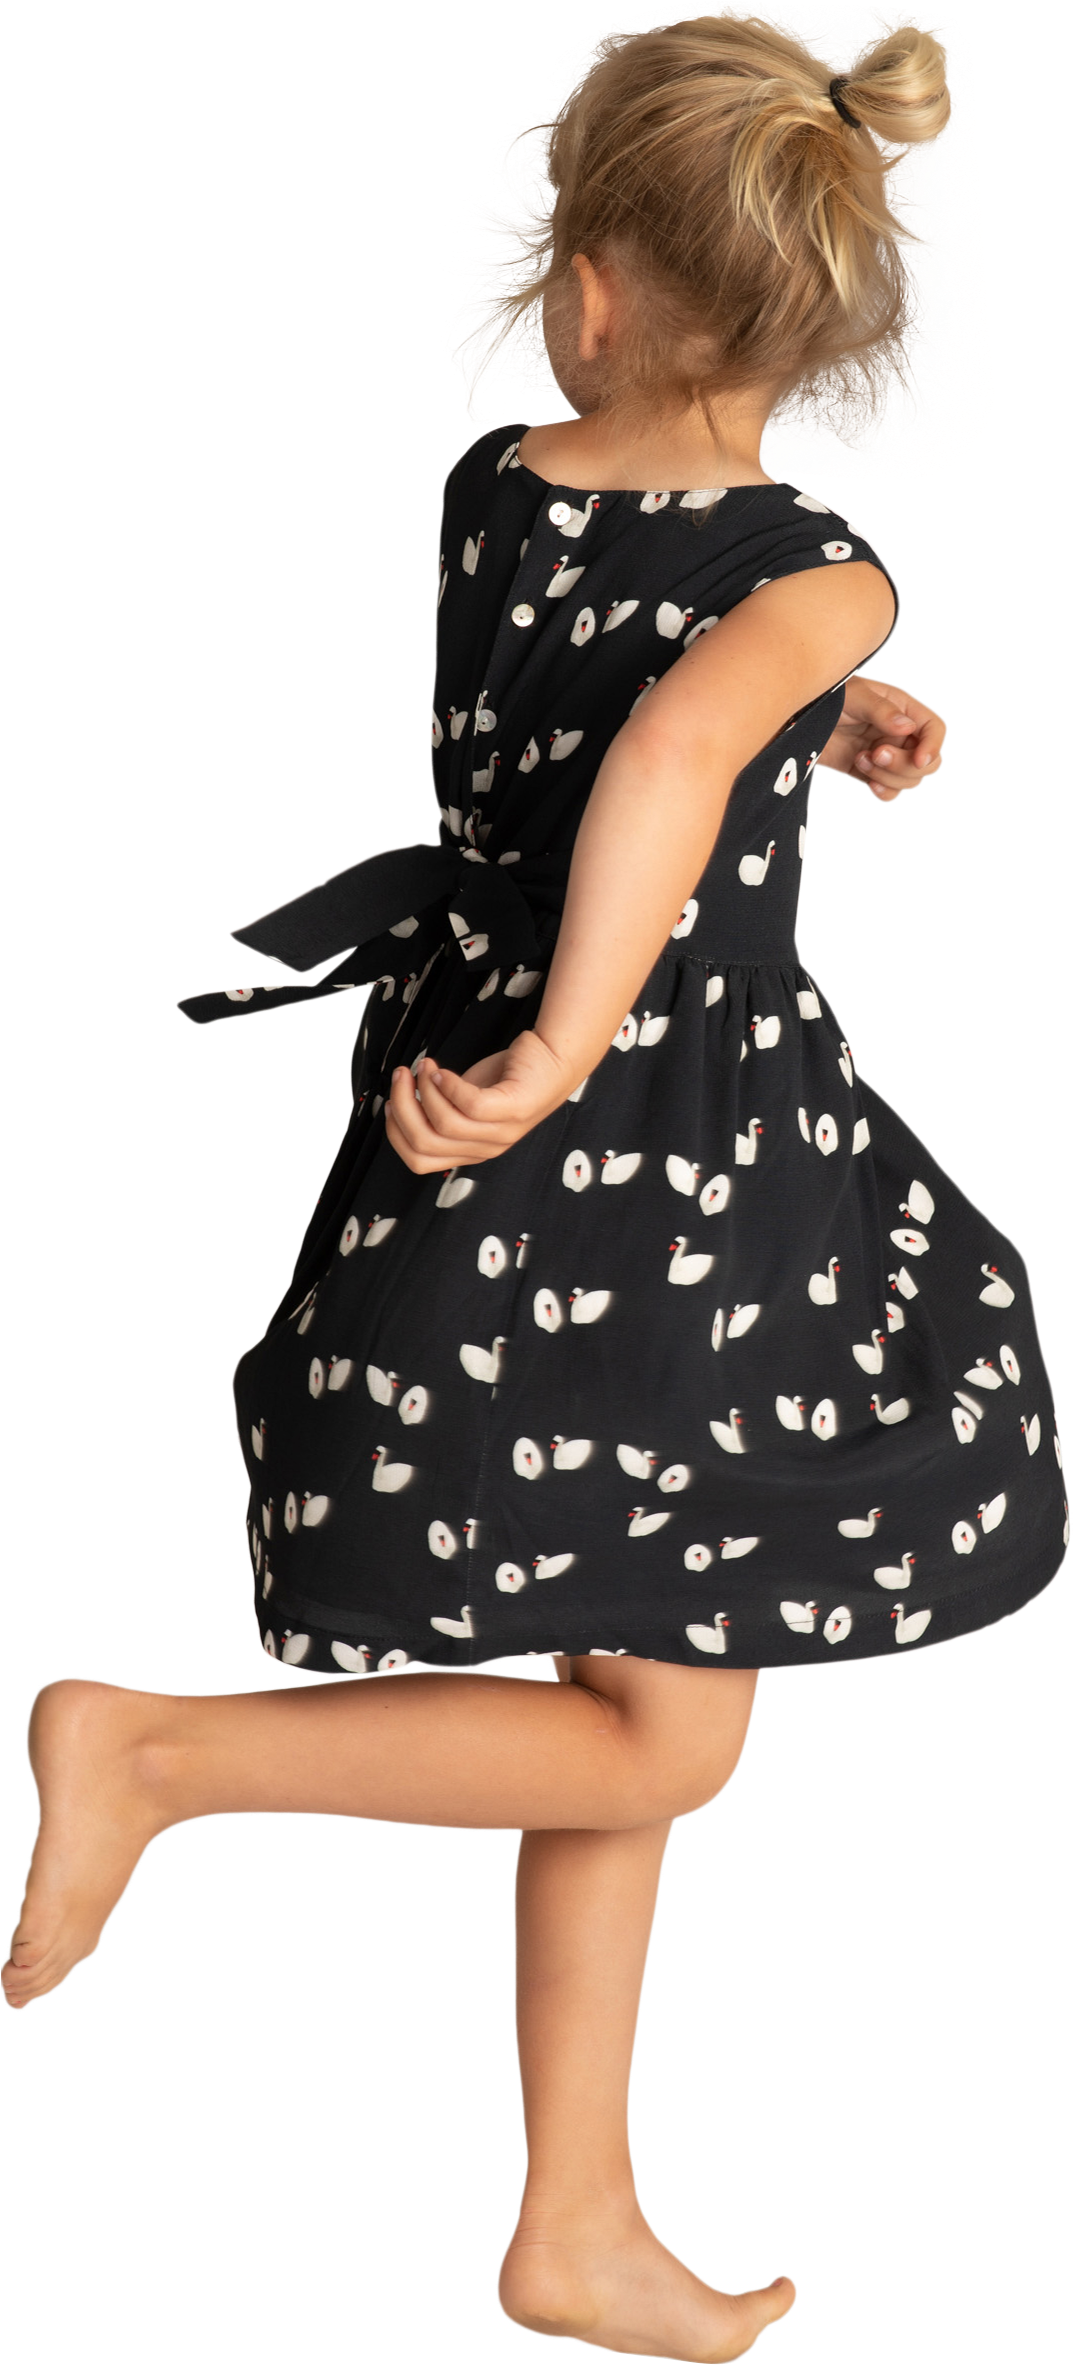 Маленькая девочка платье PNG Image